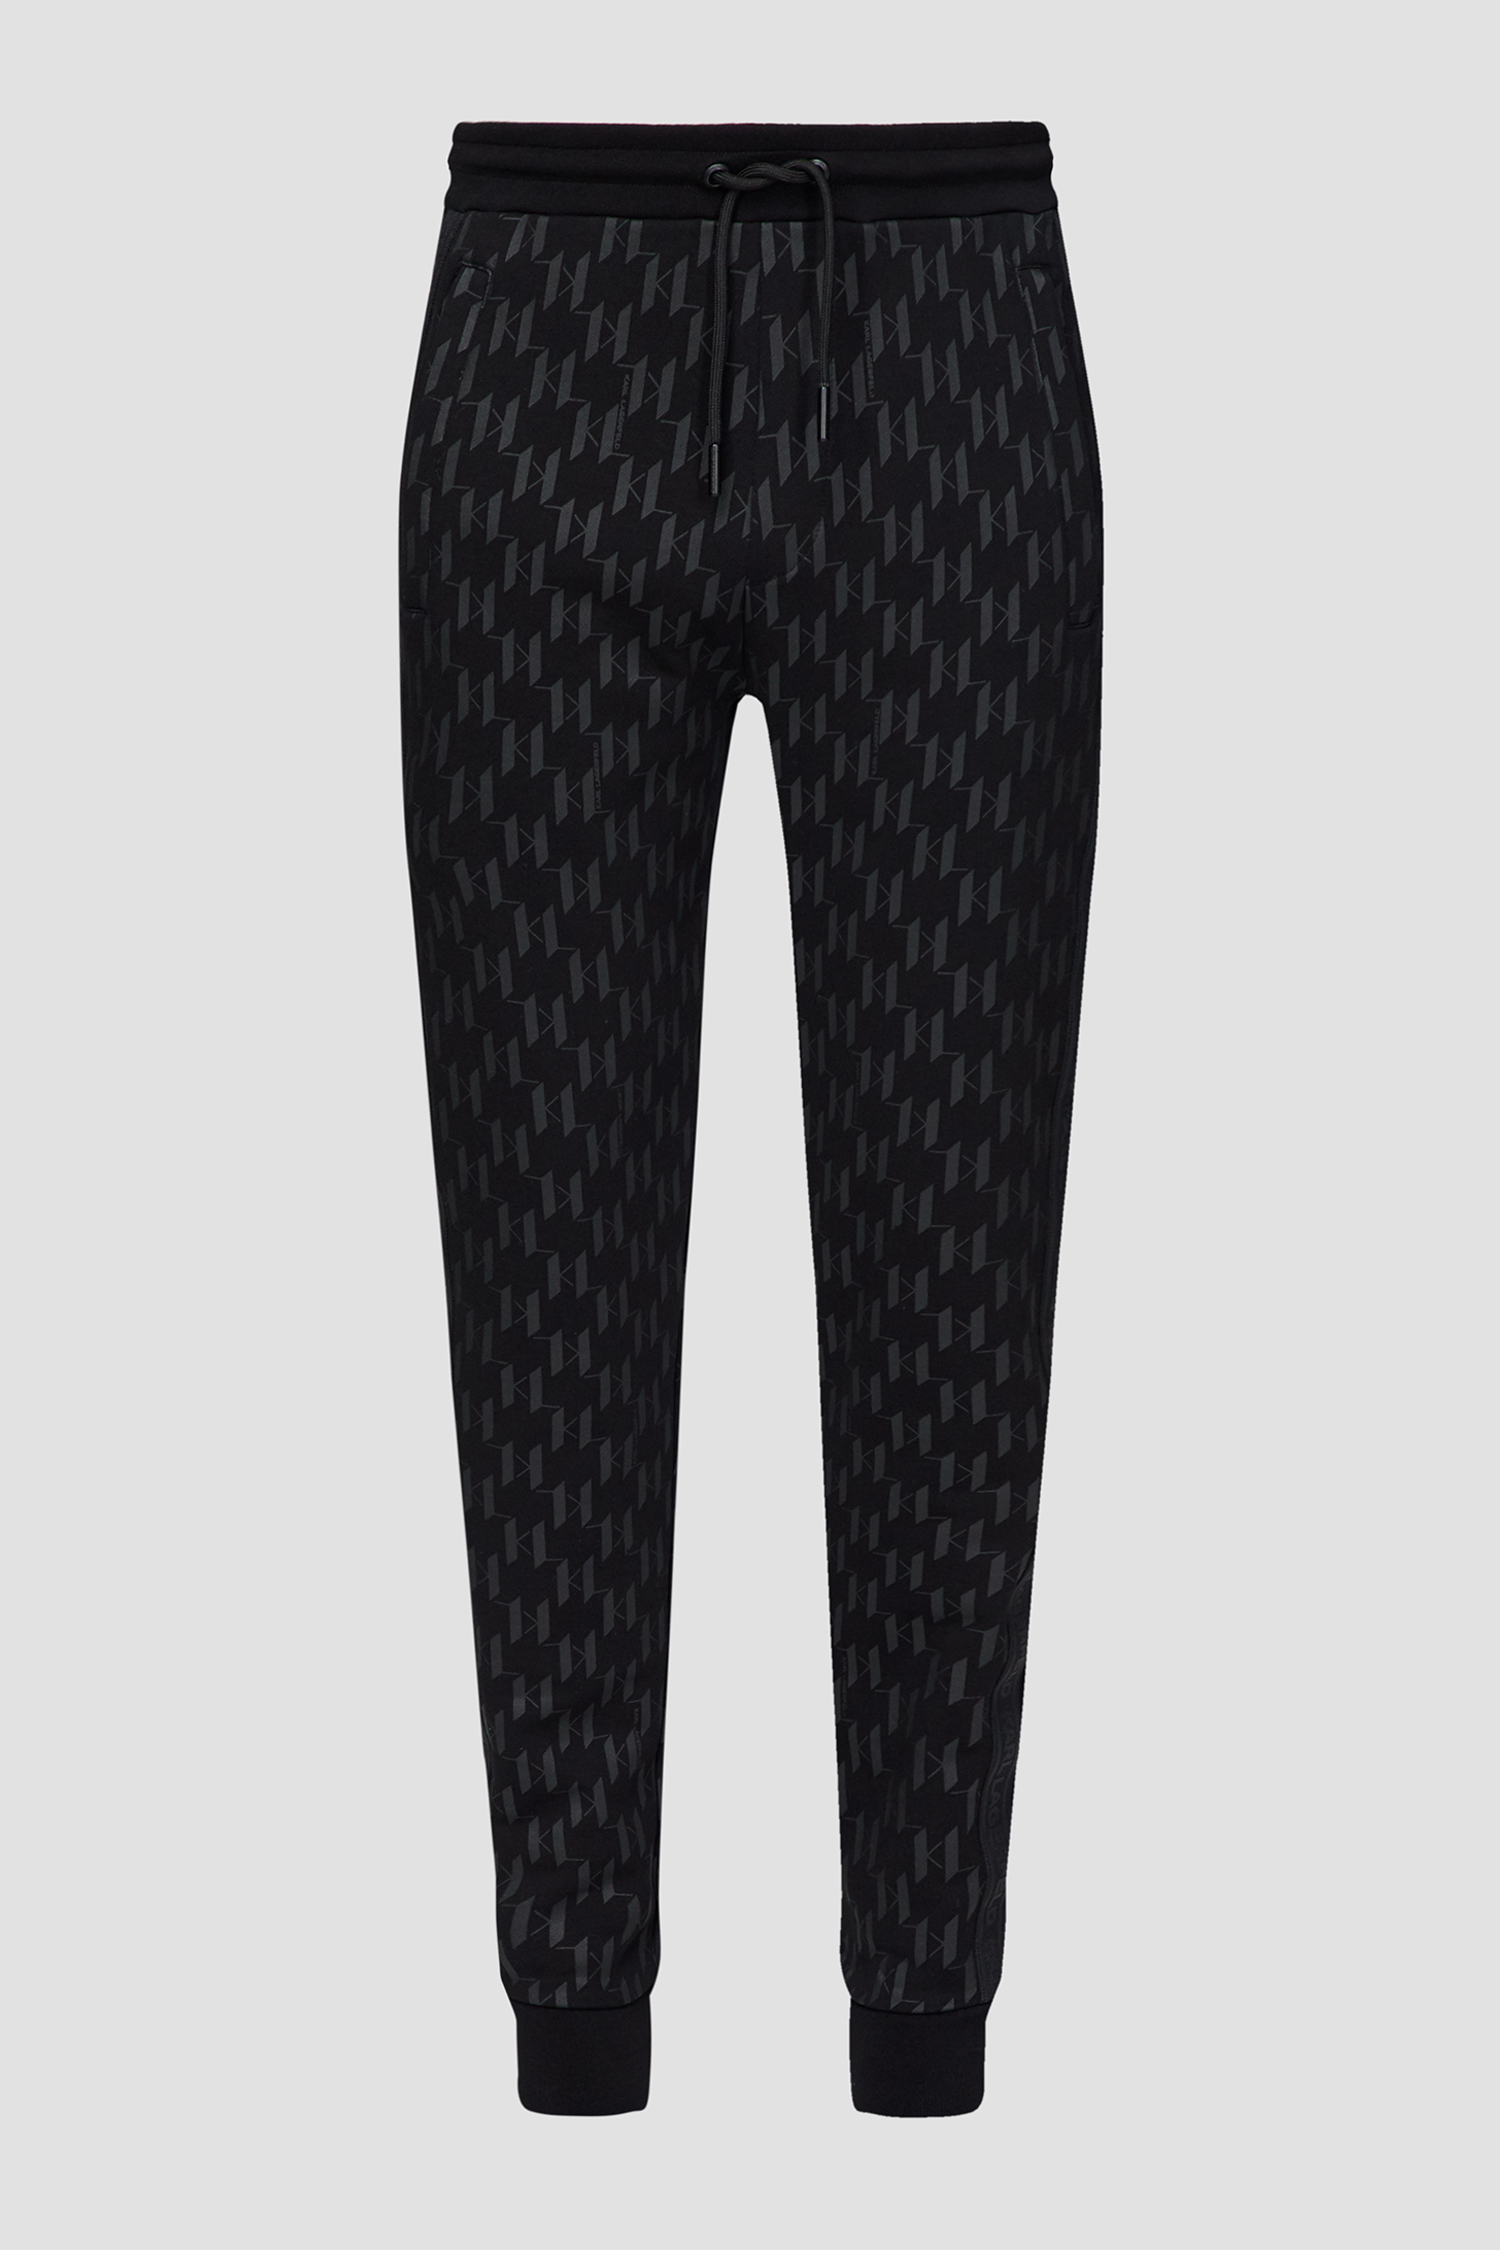 Мужские черные спортивные брюки с узором Karl Lagerfeld 532951.705077;990